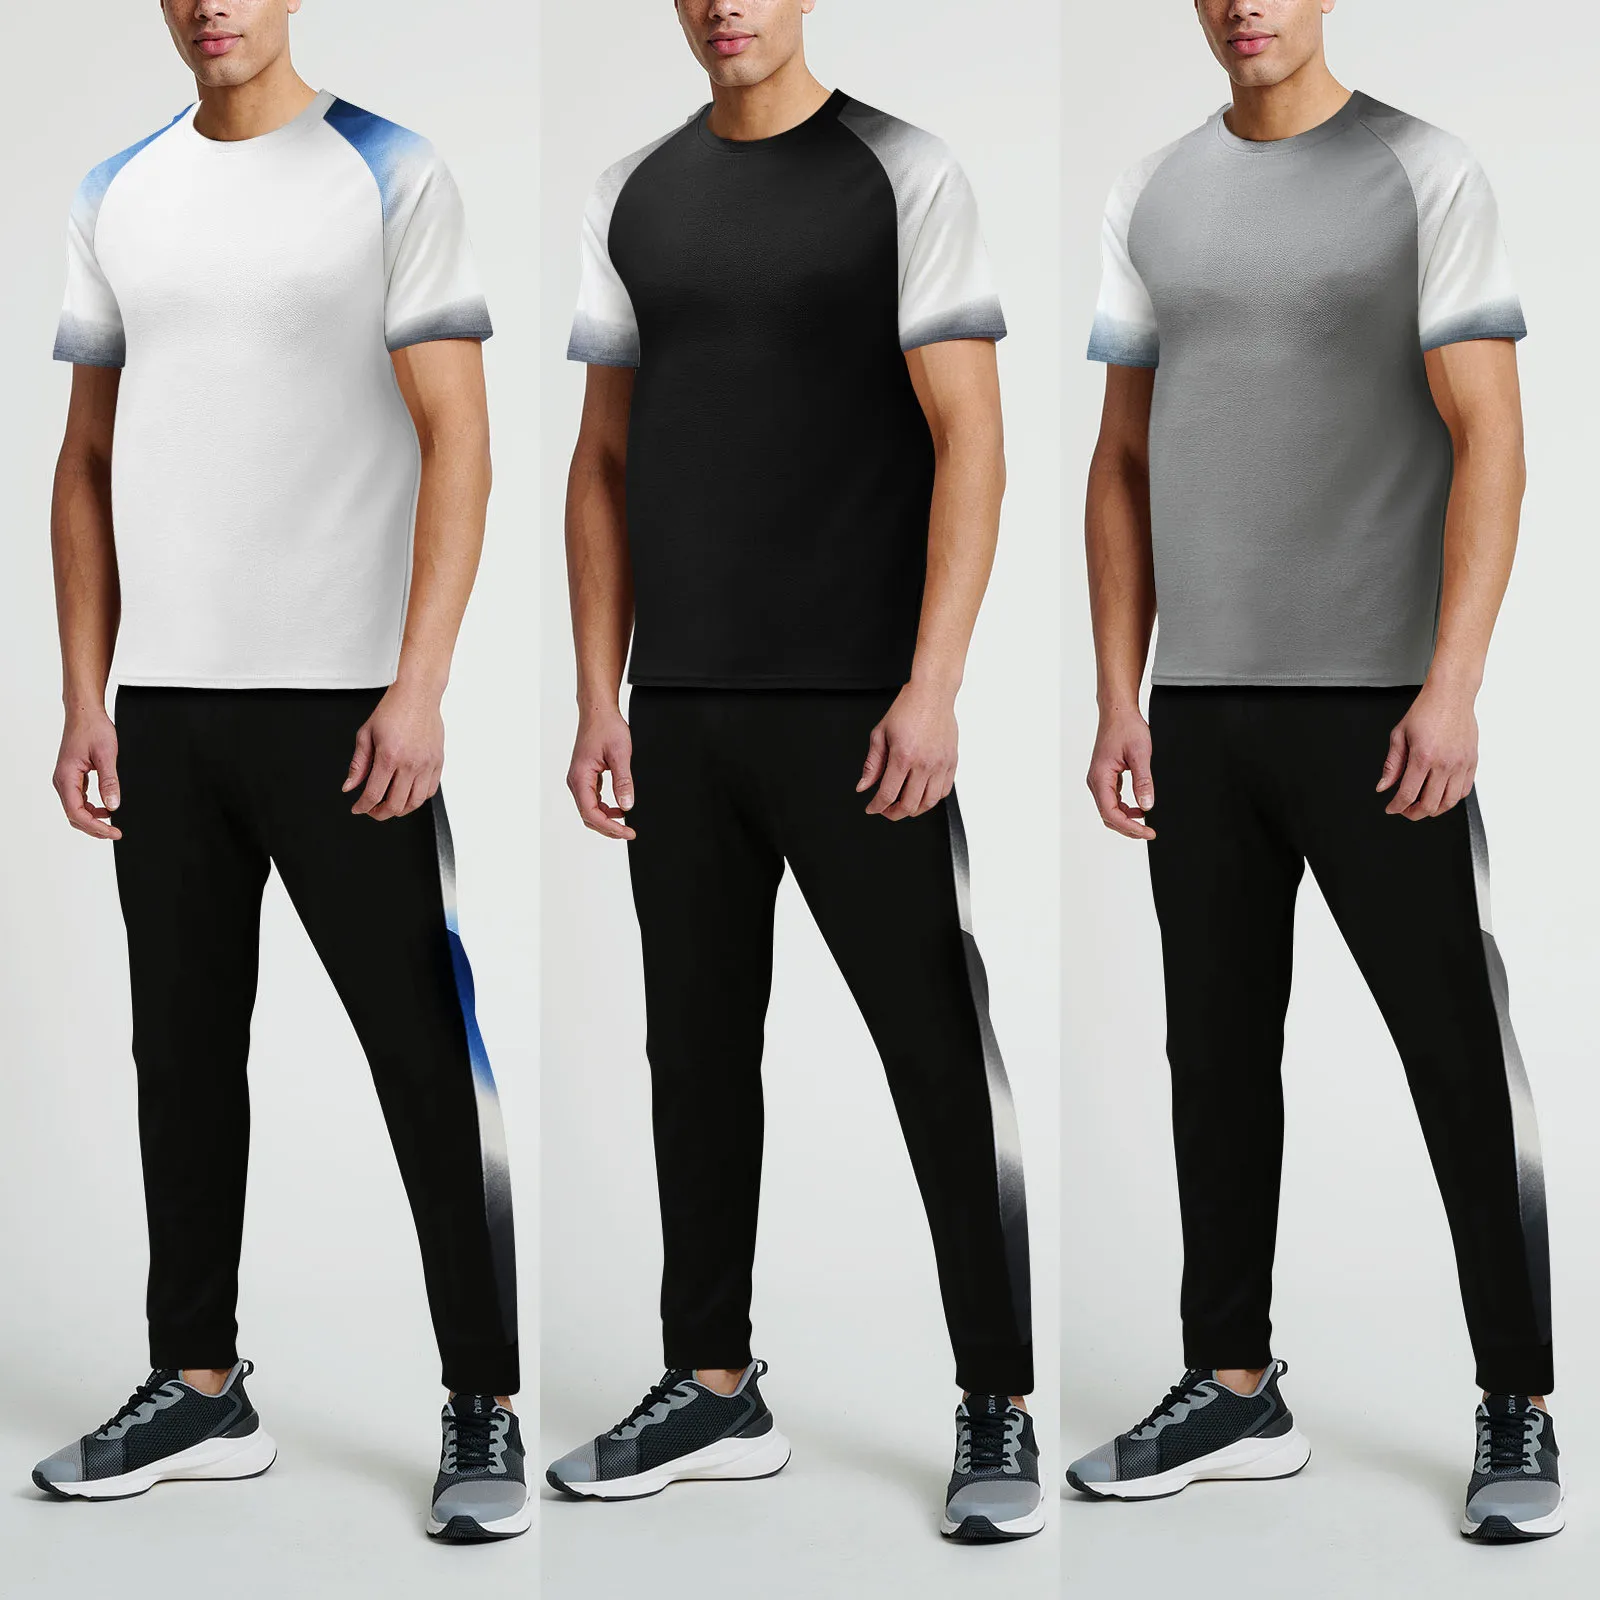 

2021 New Men’s Suit 2-piece Beach Patchwork Short Sleeve T Shirts & Long Pants Sets Simple Fashion Comfy Sets Roupas Masculinas